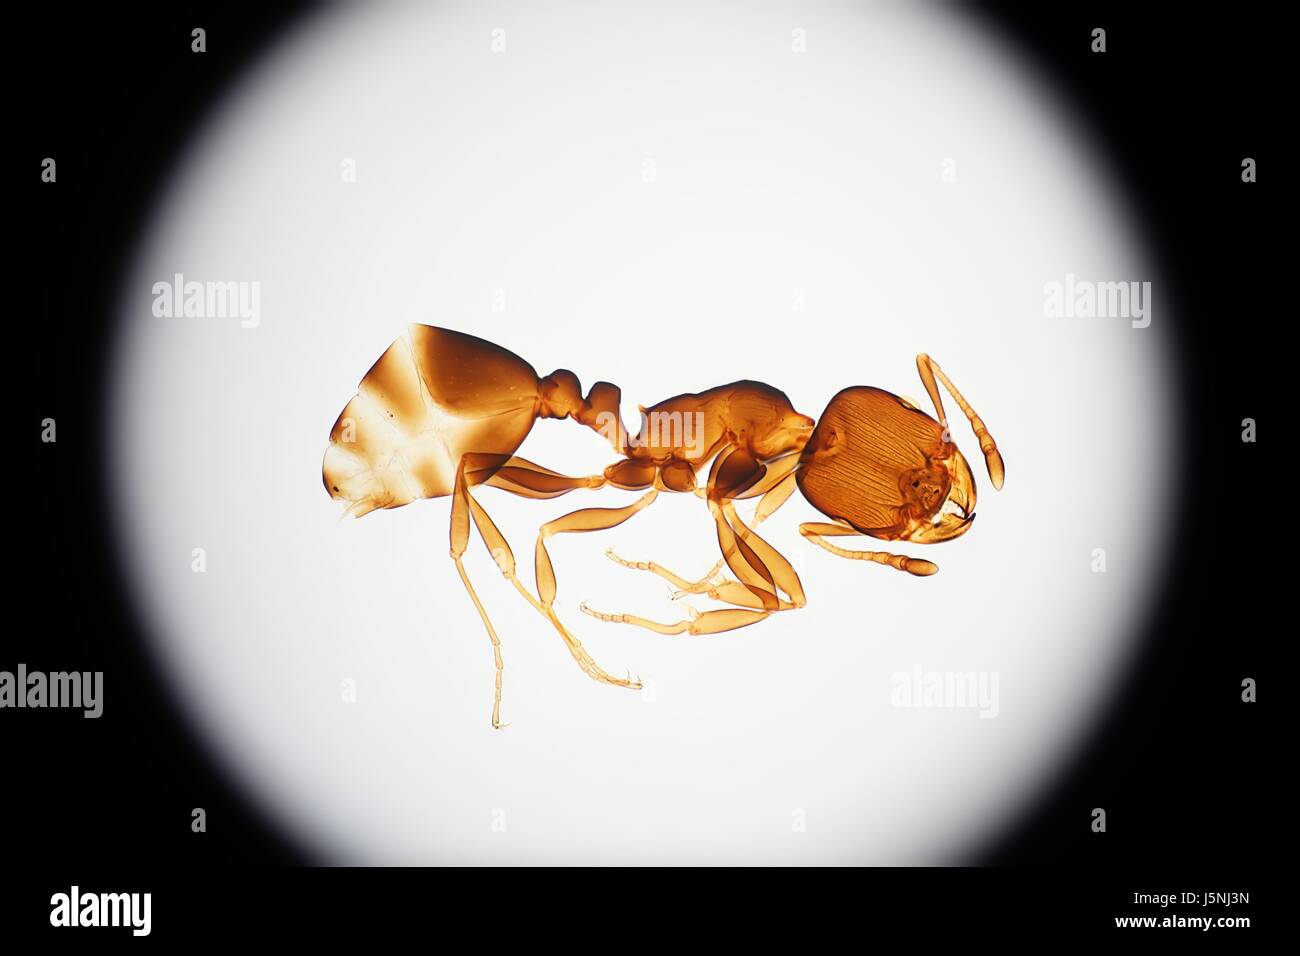 Esoscheletro di una formica, immagine al microscopio Foto Stock